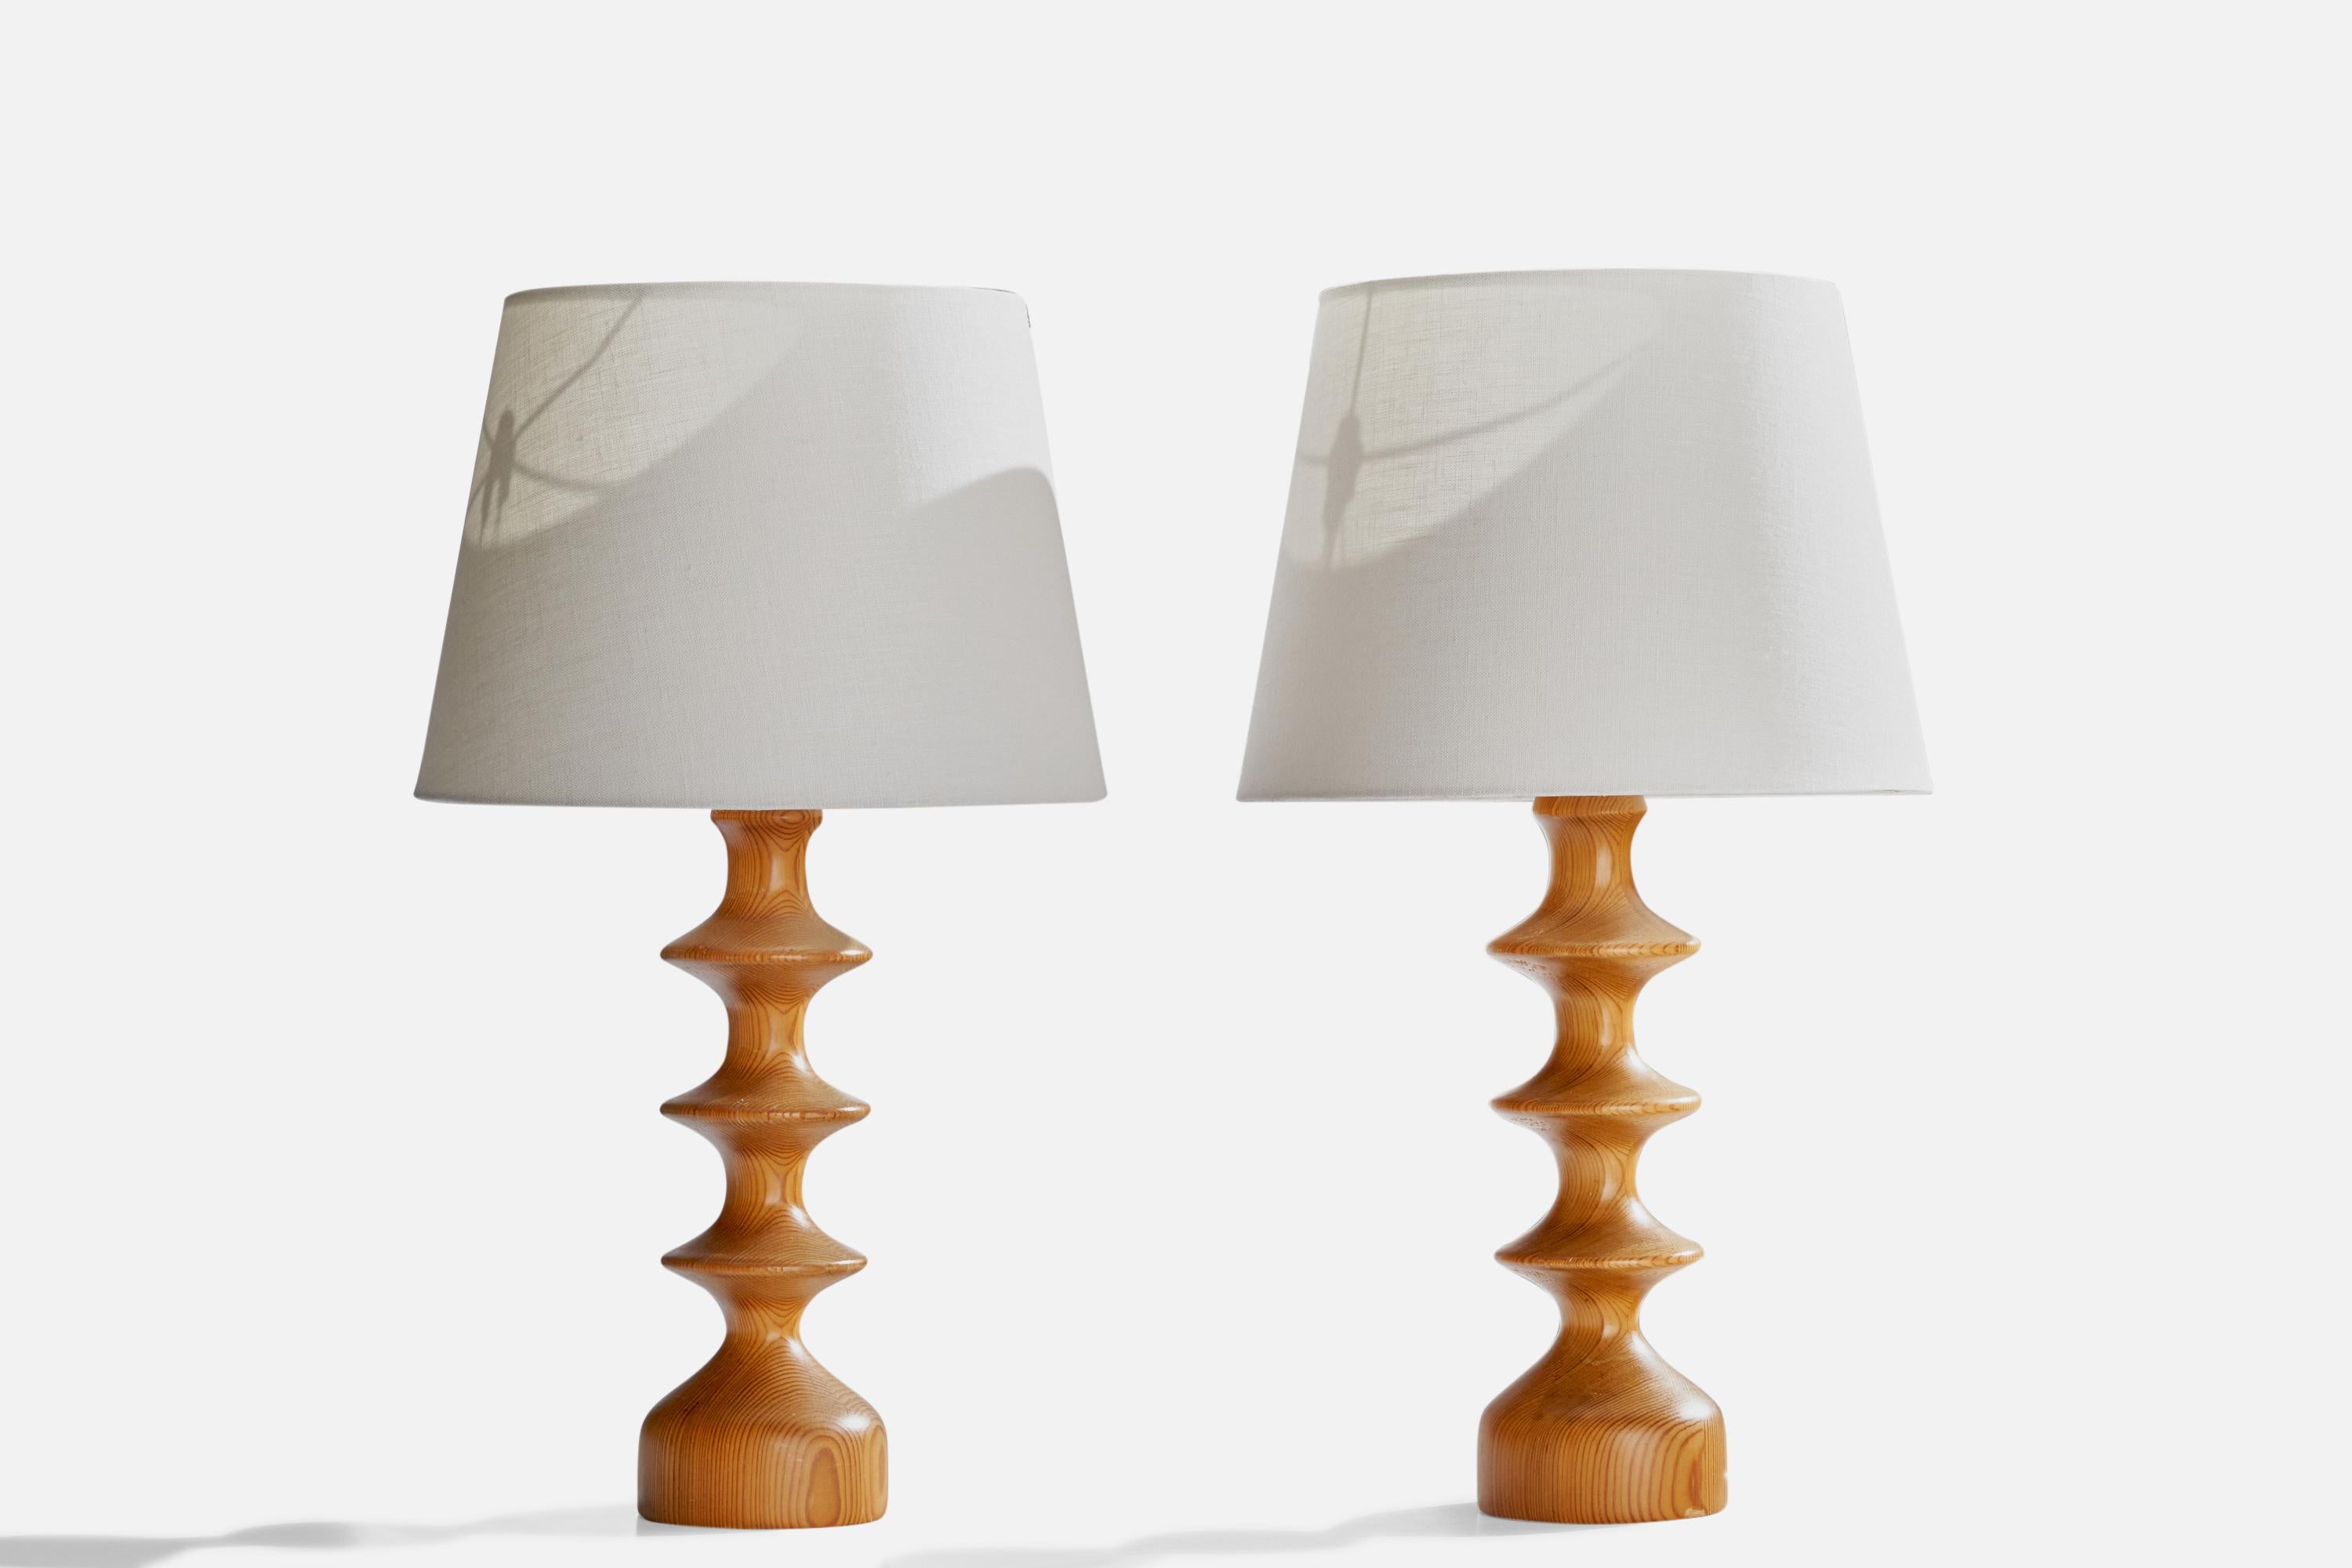 Ein Paar Tischlampen aus Kiefernholz, entworfen und hergestellt in Schweden, ca. 1970er Jahre.

Abmessungen der Lampe (Zoll): 16